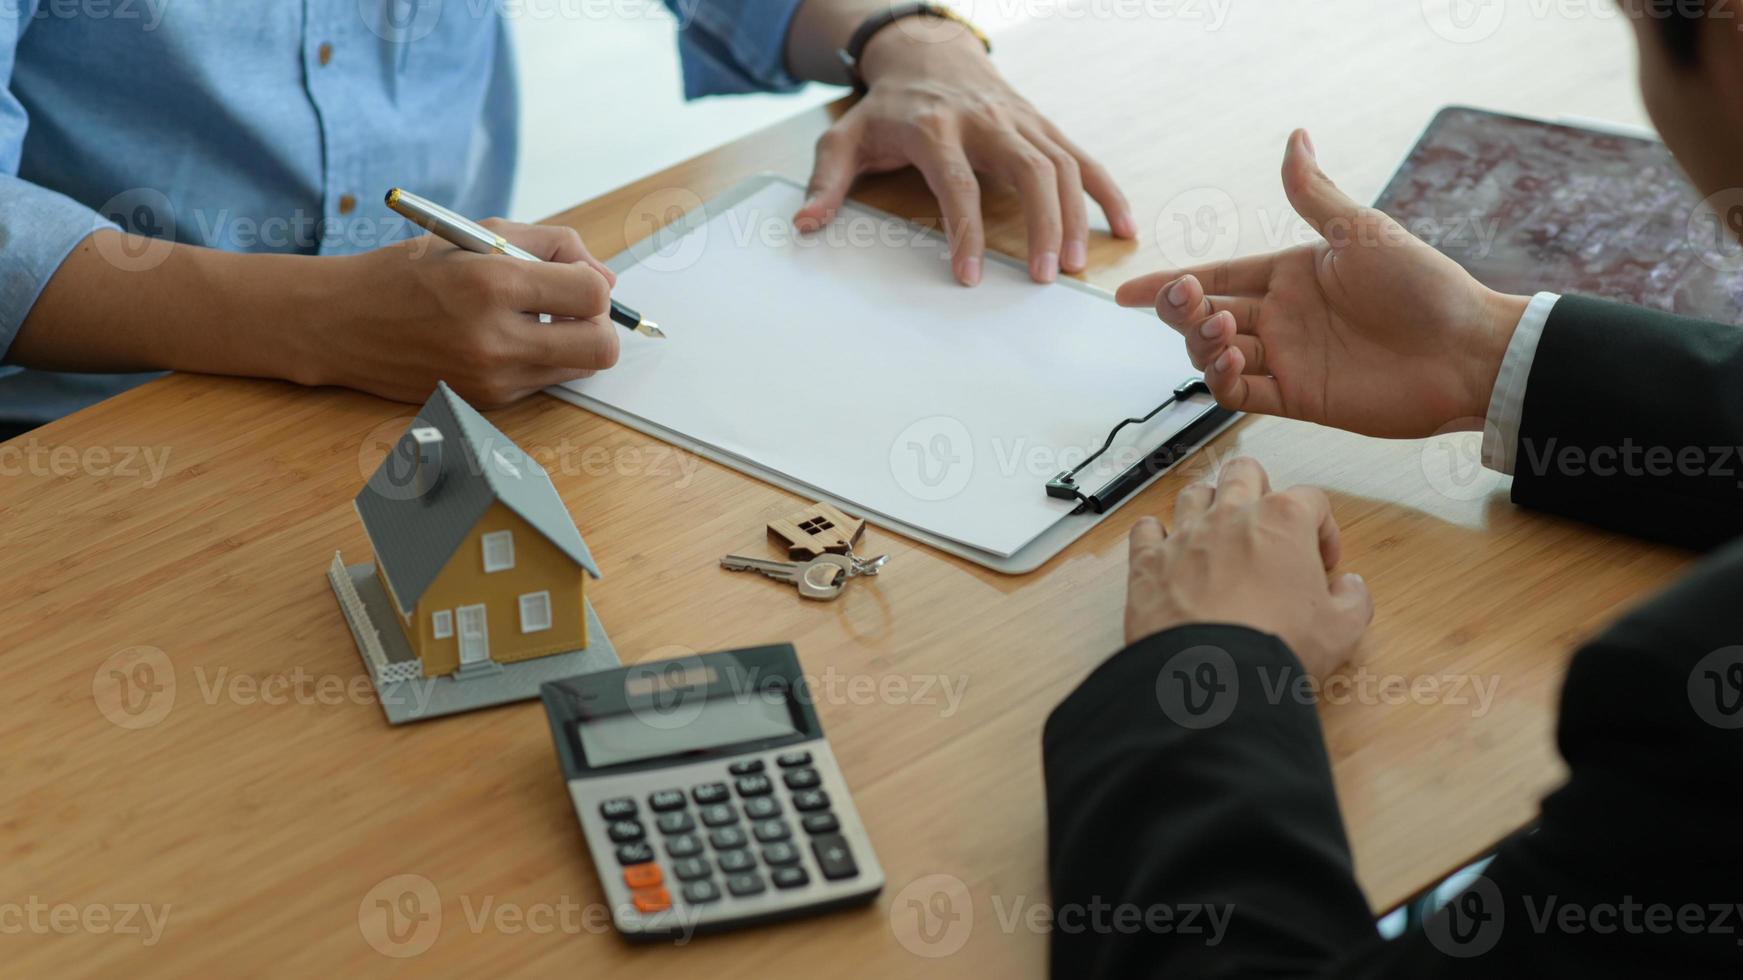 verzekeringsagenten introduceren klanten om onroerendgoedverzekeringscontracten te ondertekenen. foto